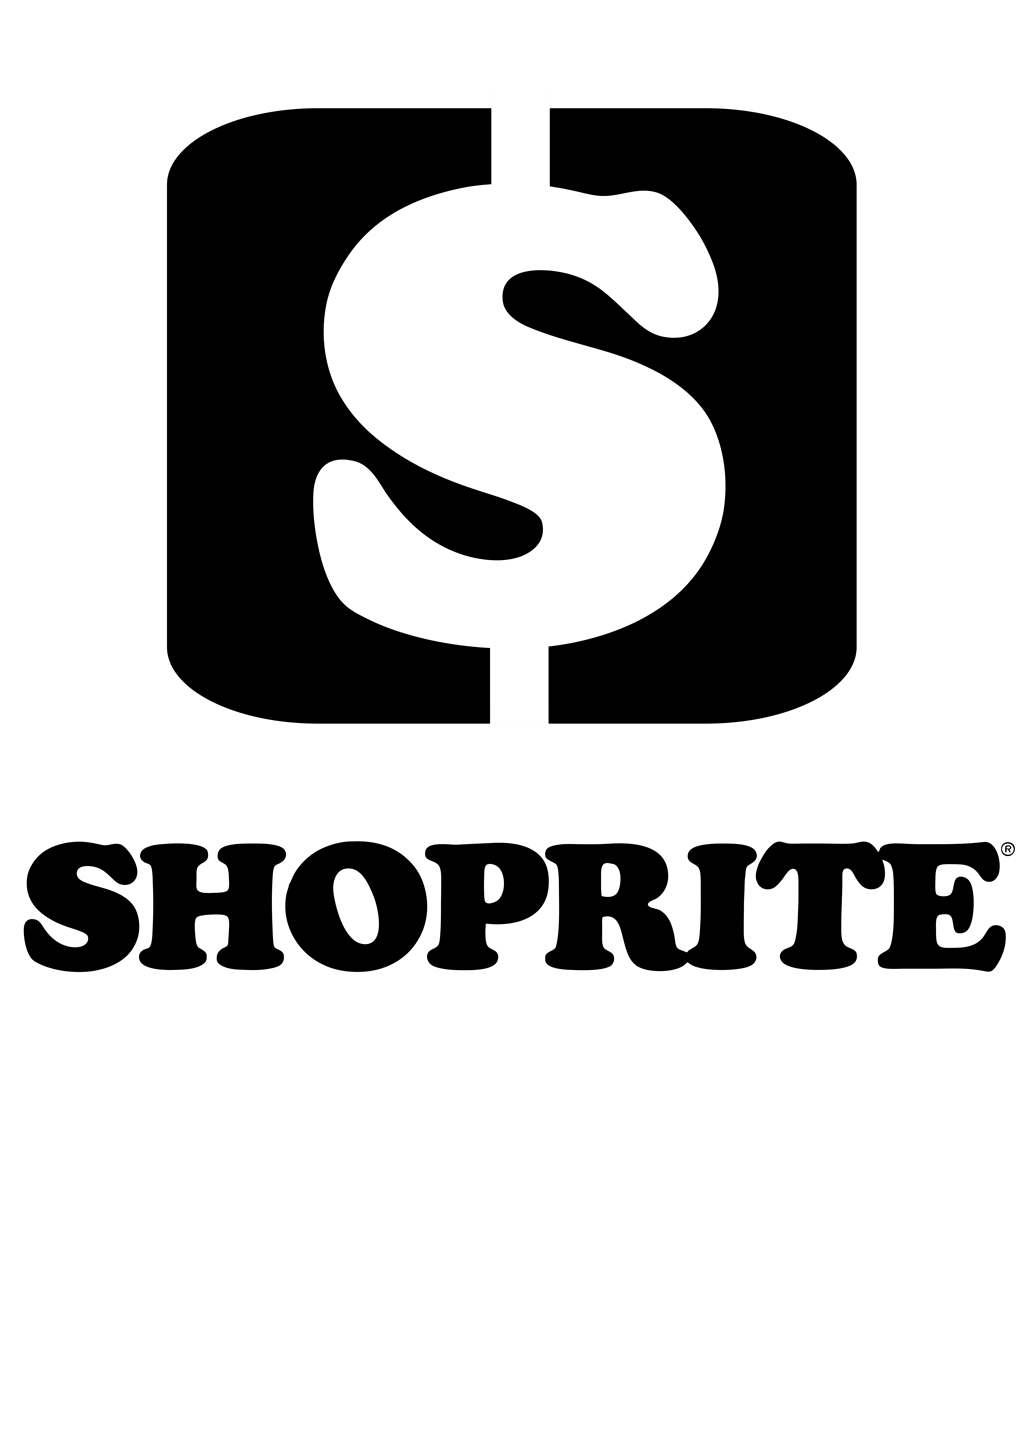 Shoprite logotype, transparent .png, medium, large